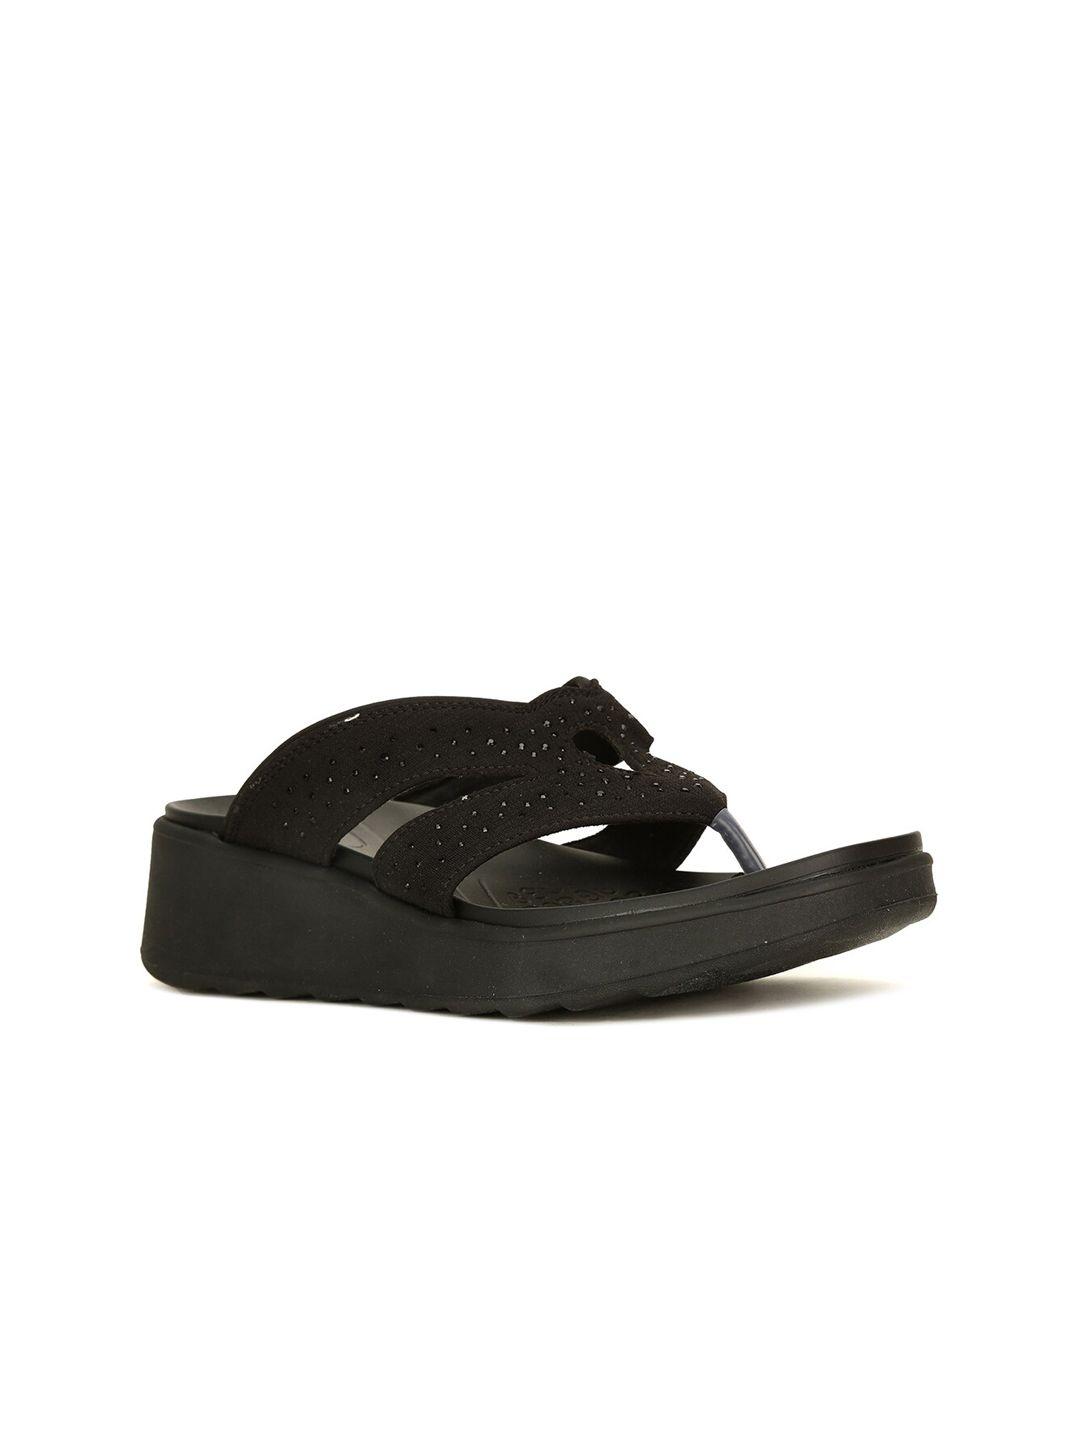 naturalizer-black-embellished-comfort-sandals-with-laser-cuts